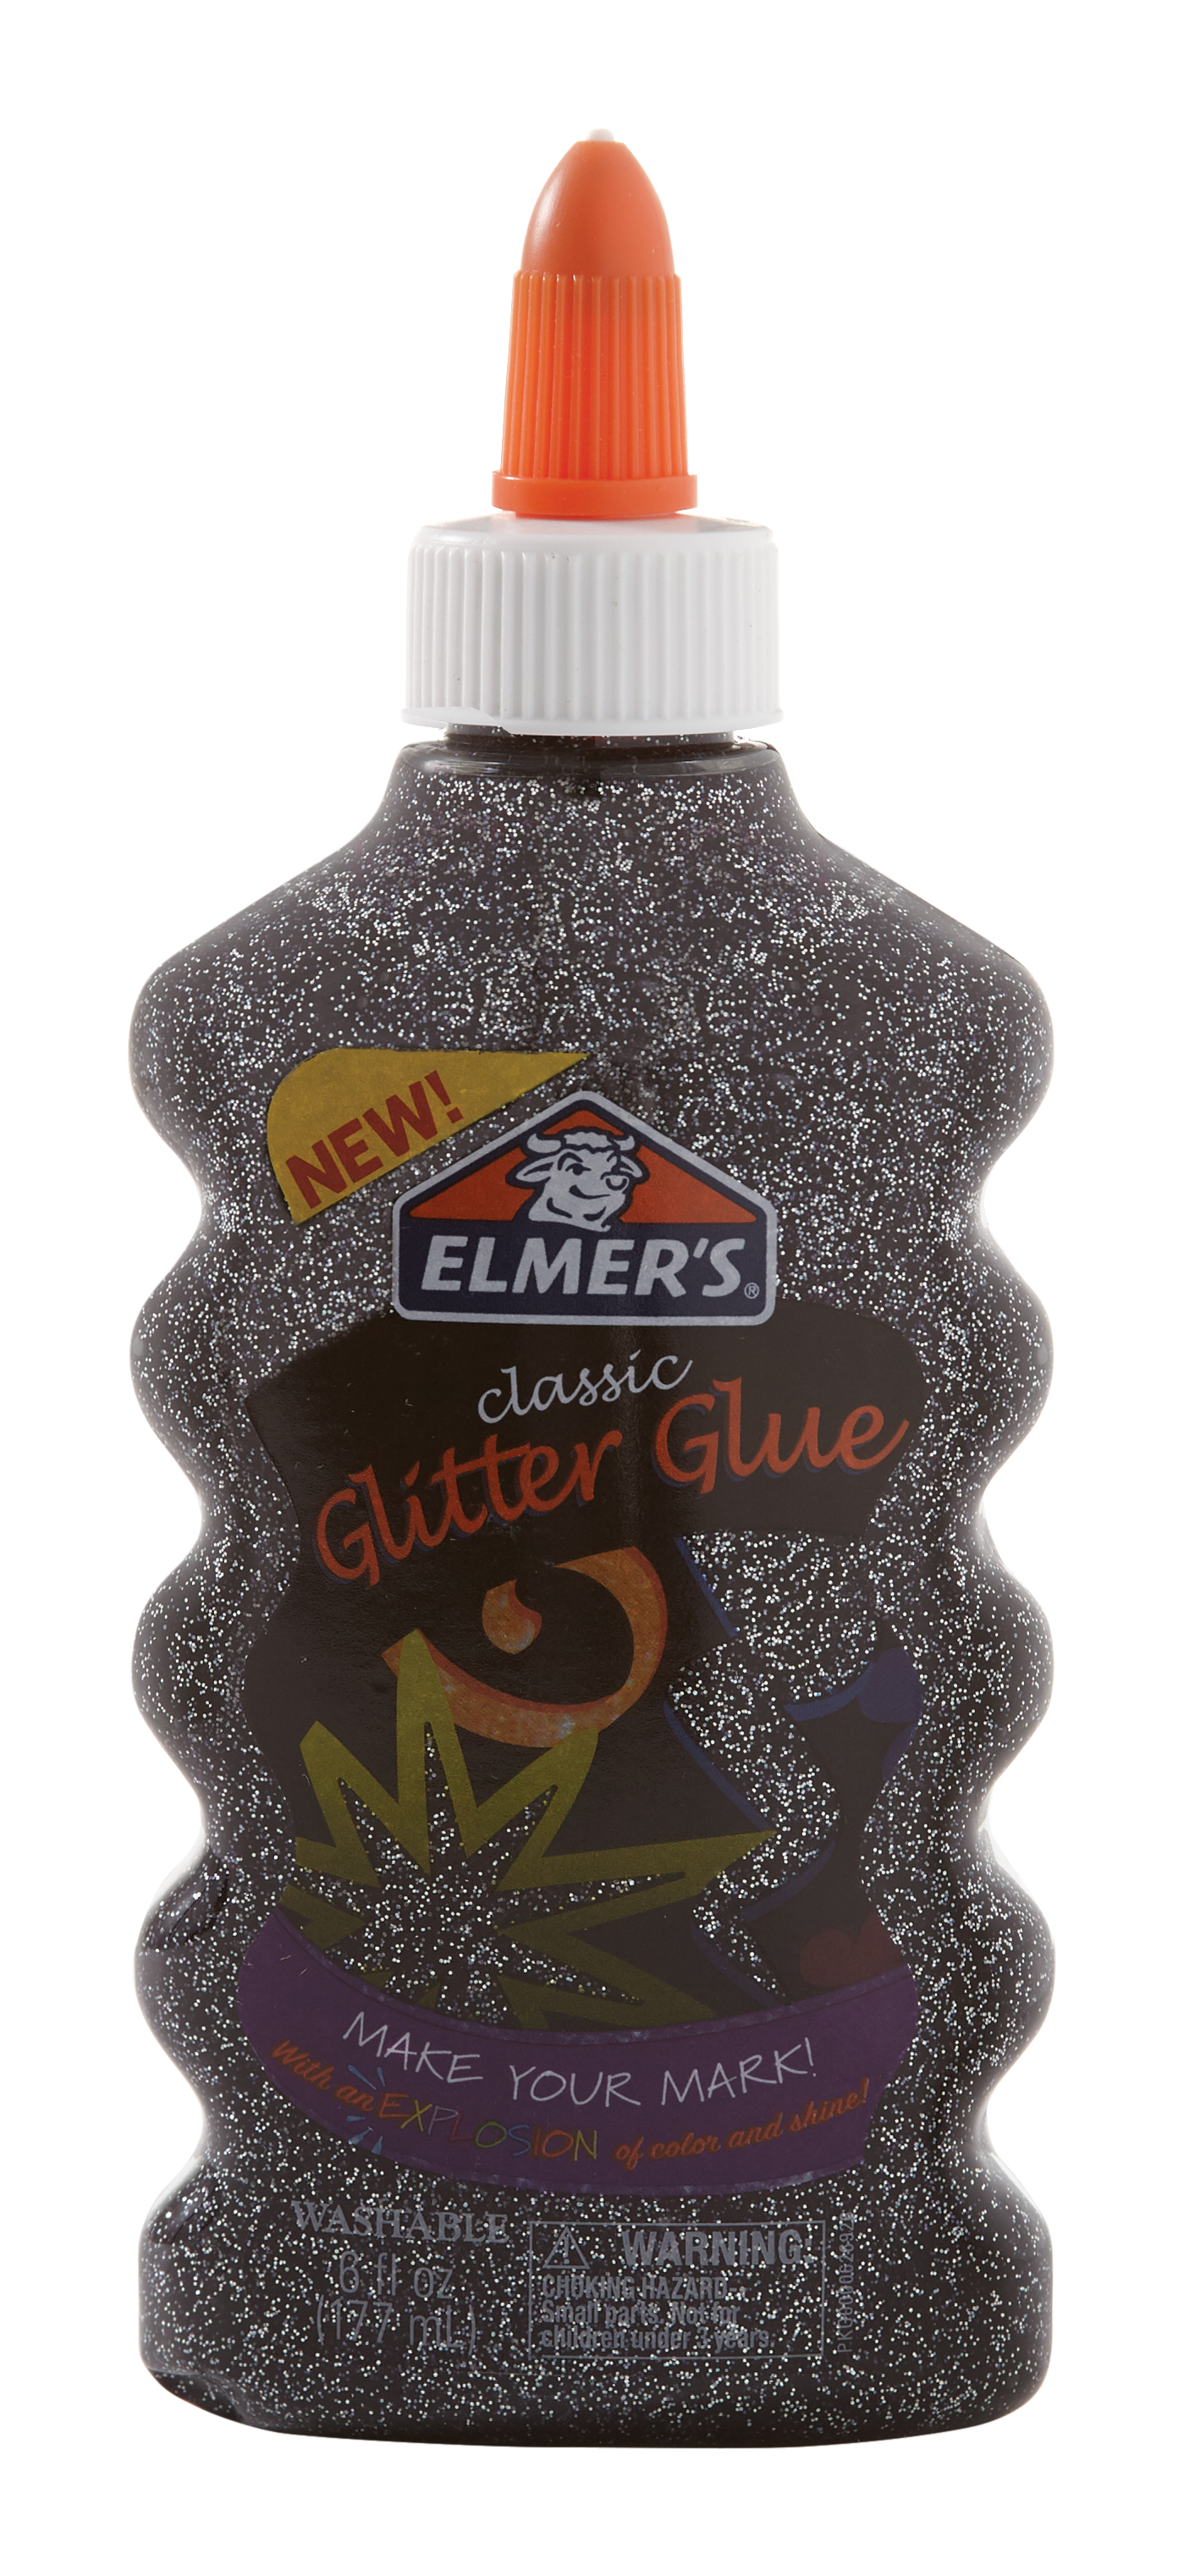 Elmer's Glitter Glue 6oz-Black, ELMGG-E910 26000181945 | eBay